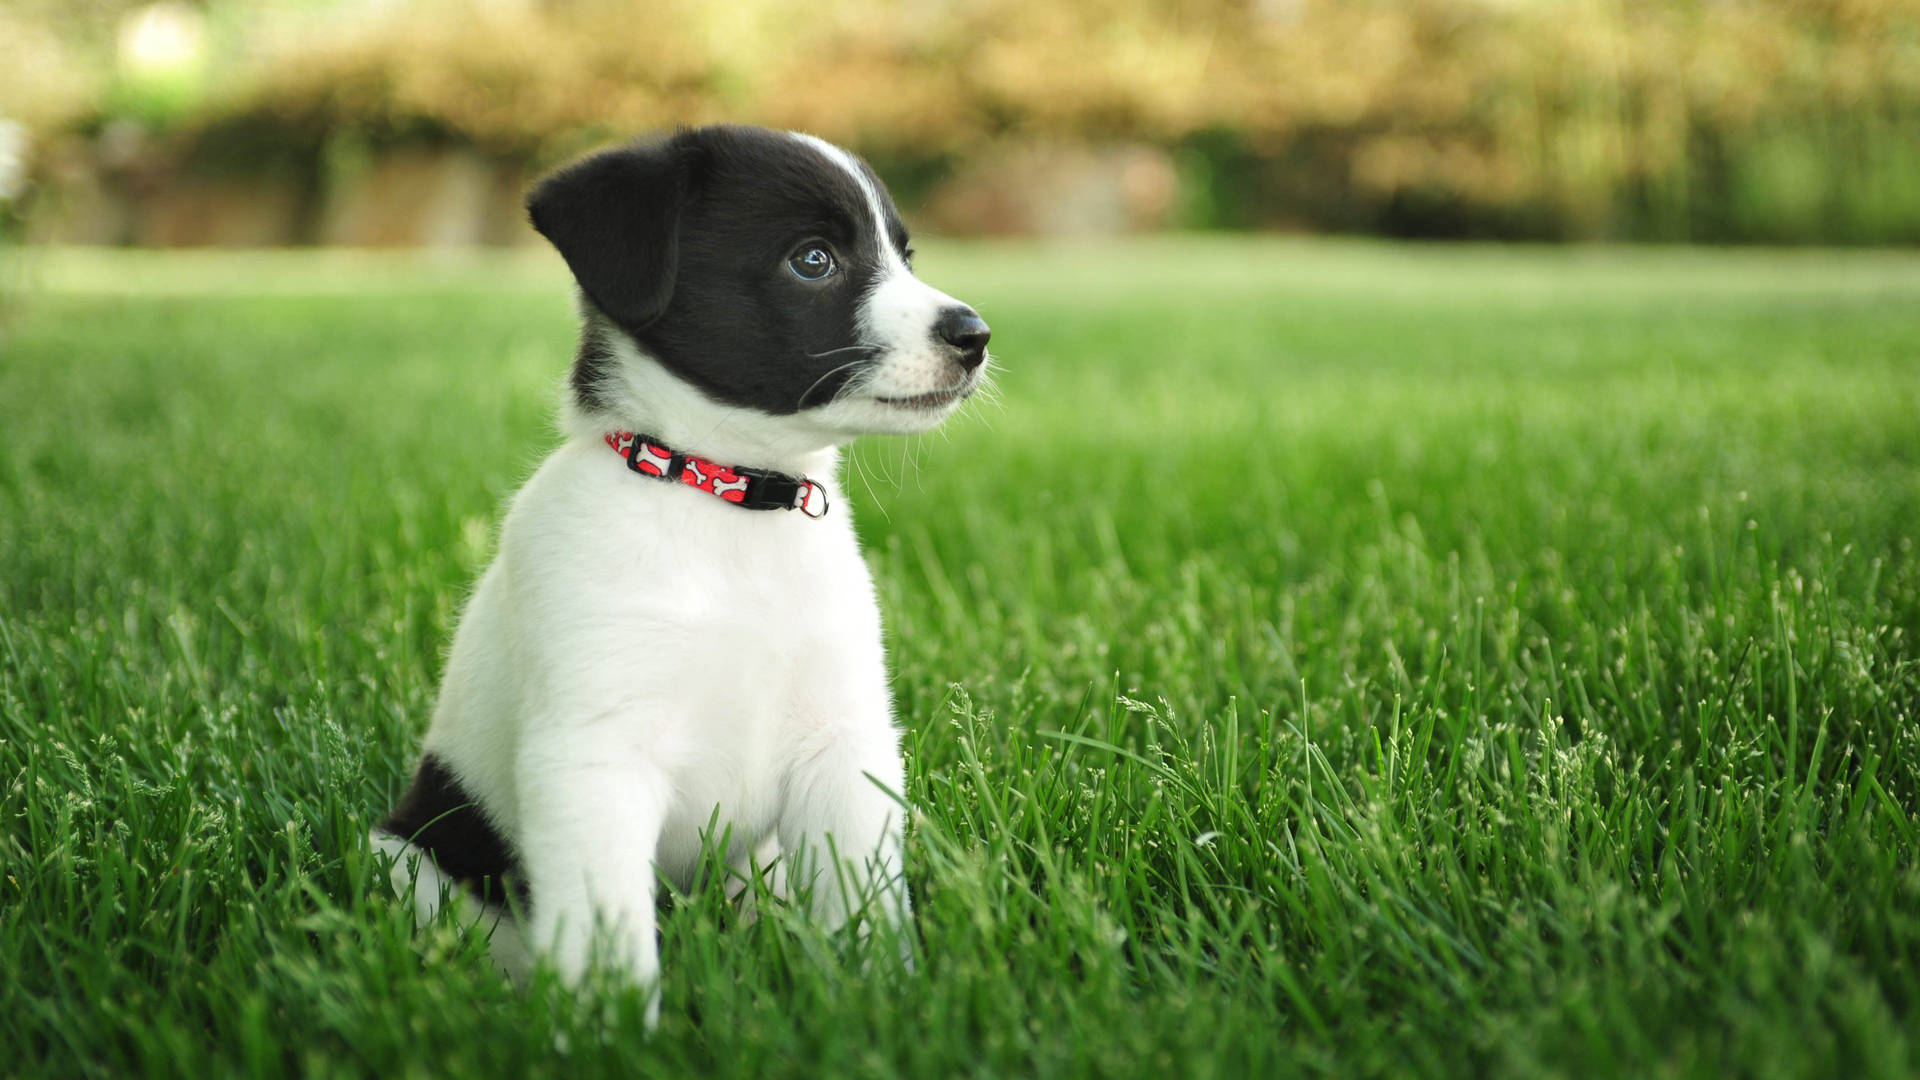 Puppy On A Mowed Grass HD Wallpaper